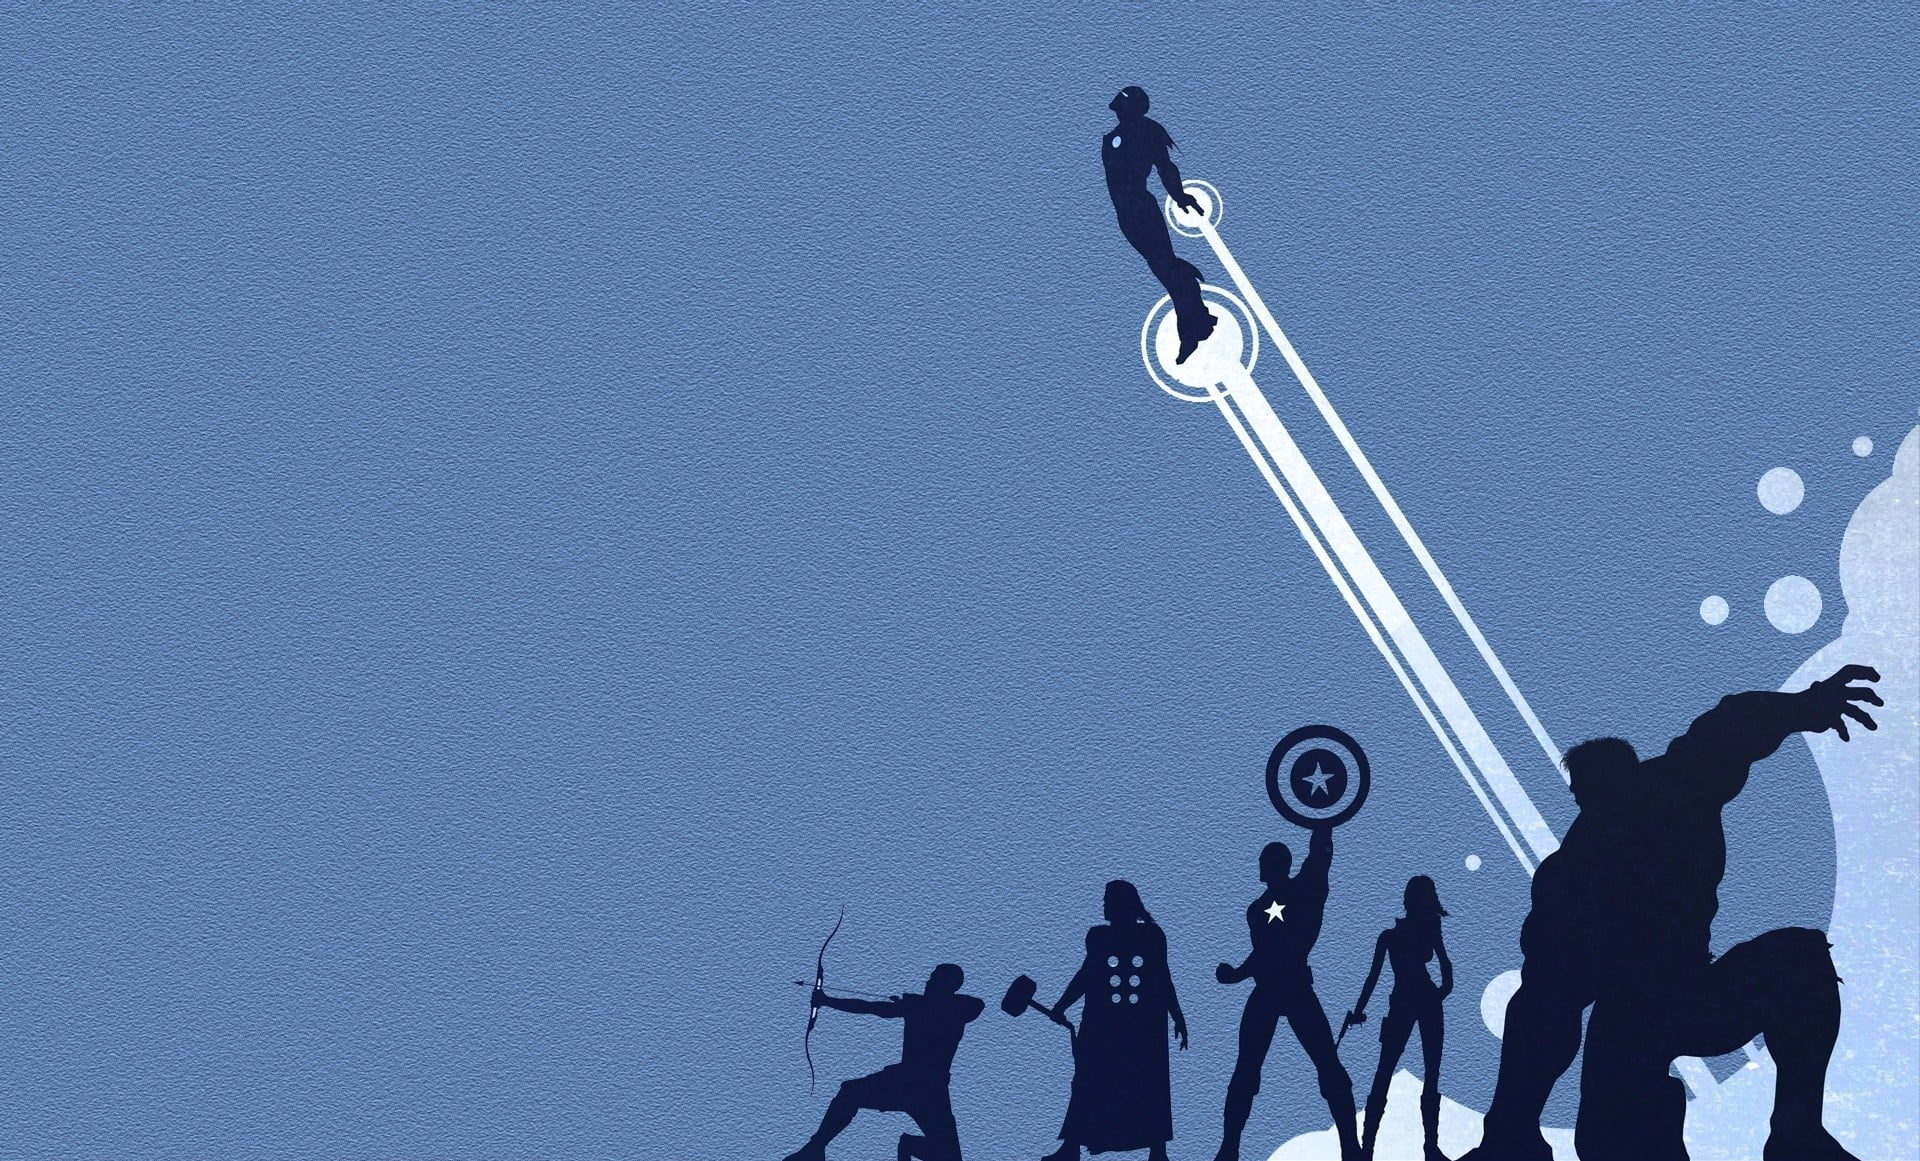 Marvel The Avengers wallpaper, Marvel Avengers illustration, Iron Man